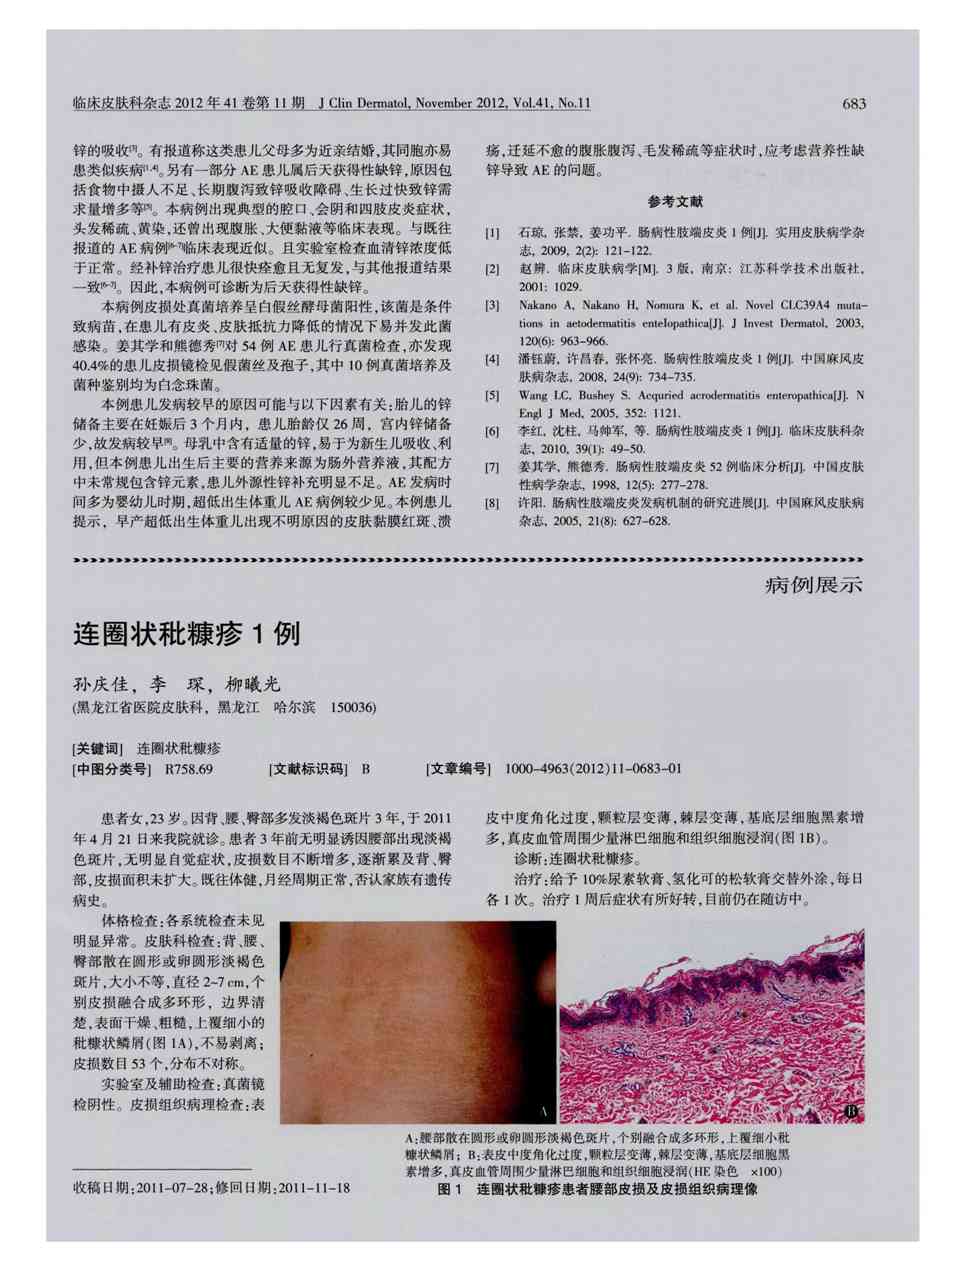 期刊连圈状秕糠疹1例     患者女,23岁.